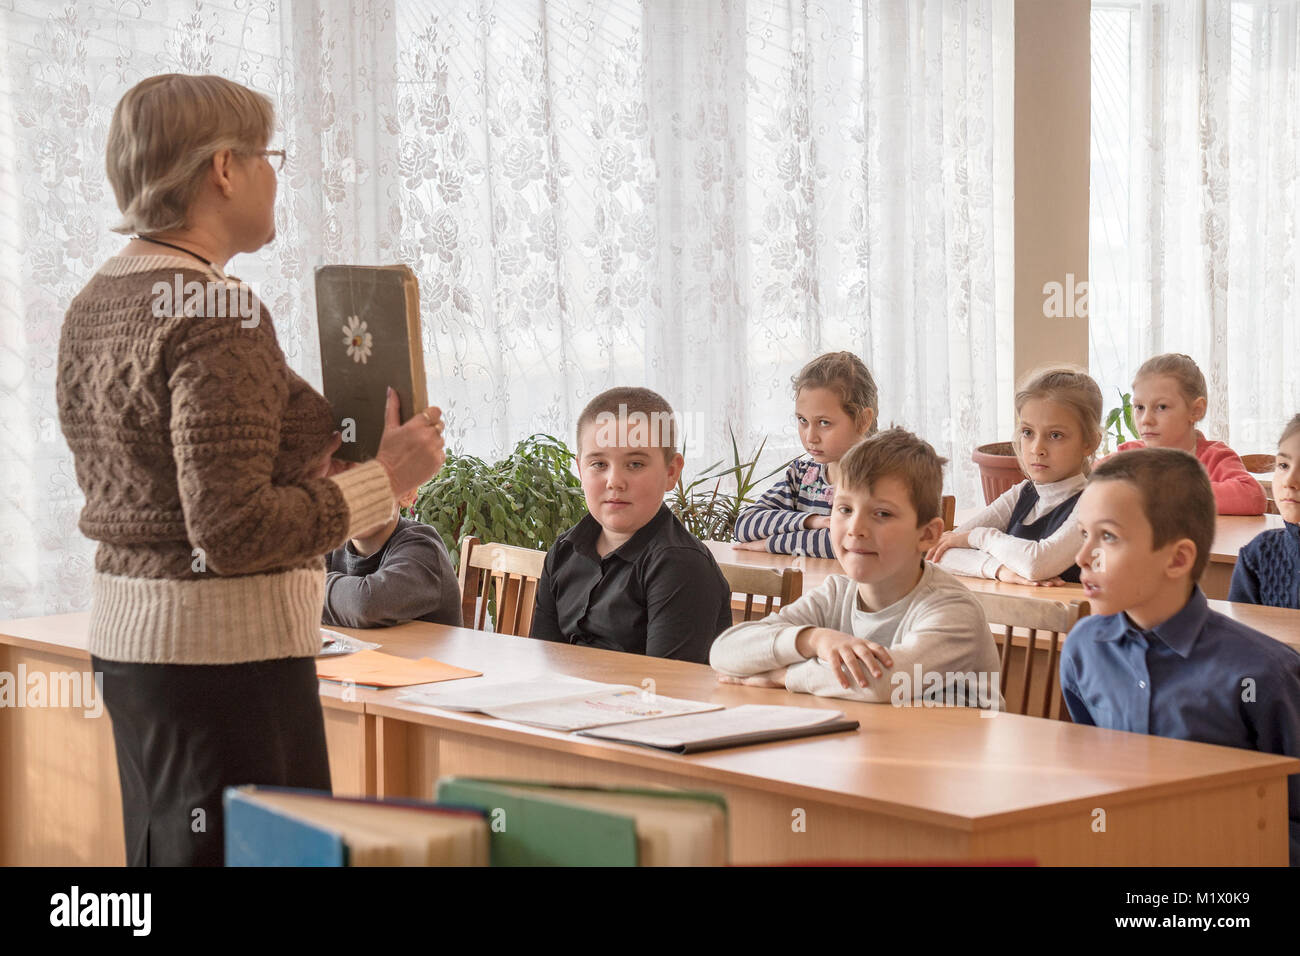 CHAPAEVSK, Region Samara, Russland - Januar 31, 2018: Die Schüler der Grundschule in der Klasse mit einer Lehrerin Stockfoto